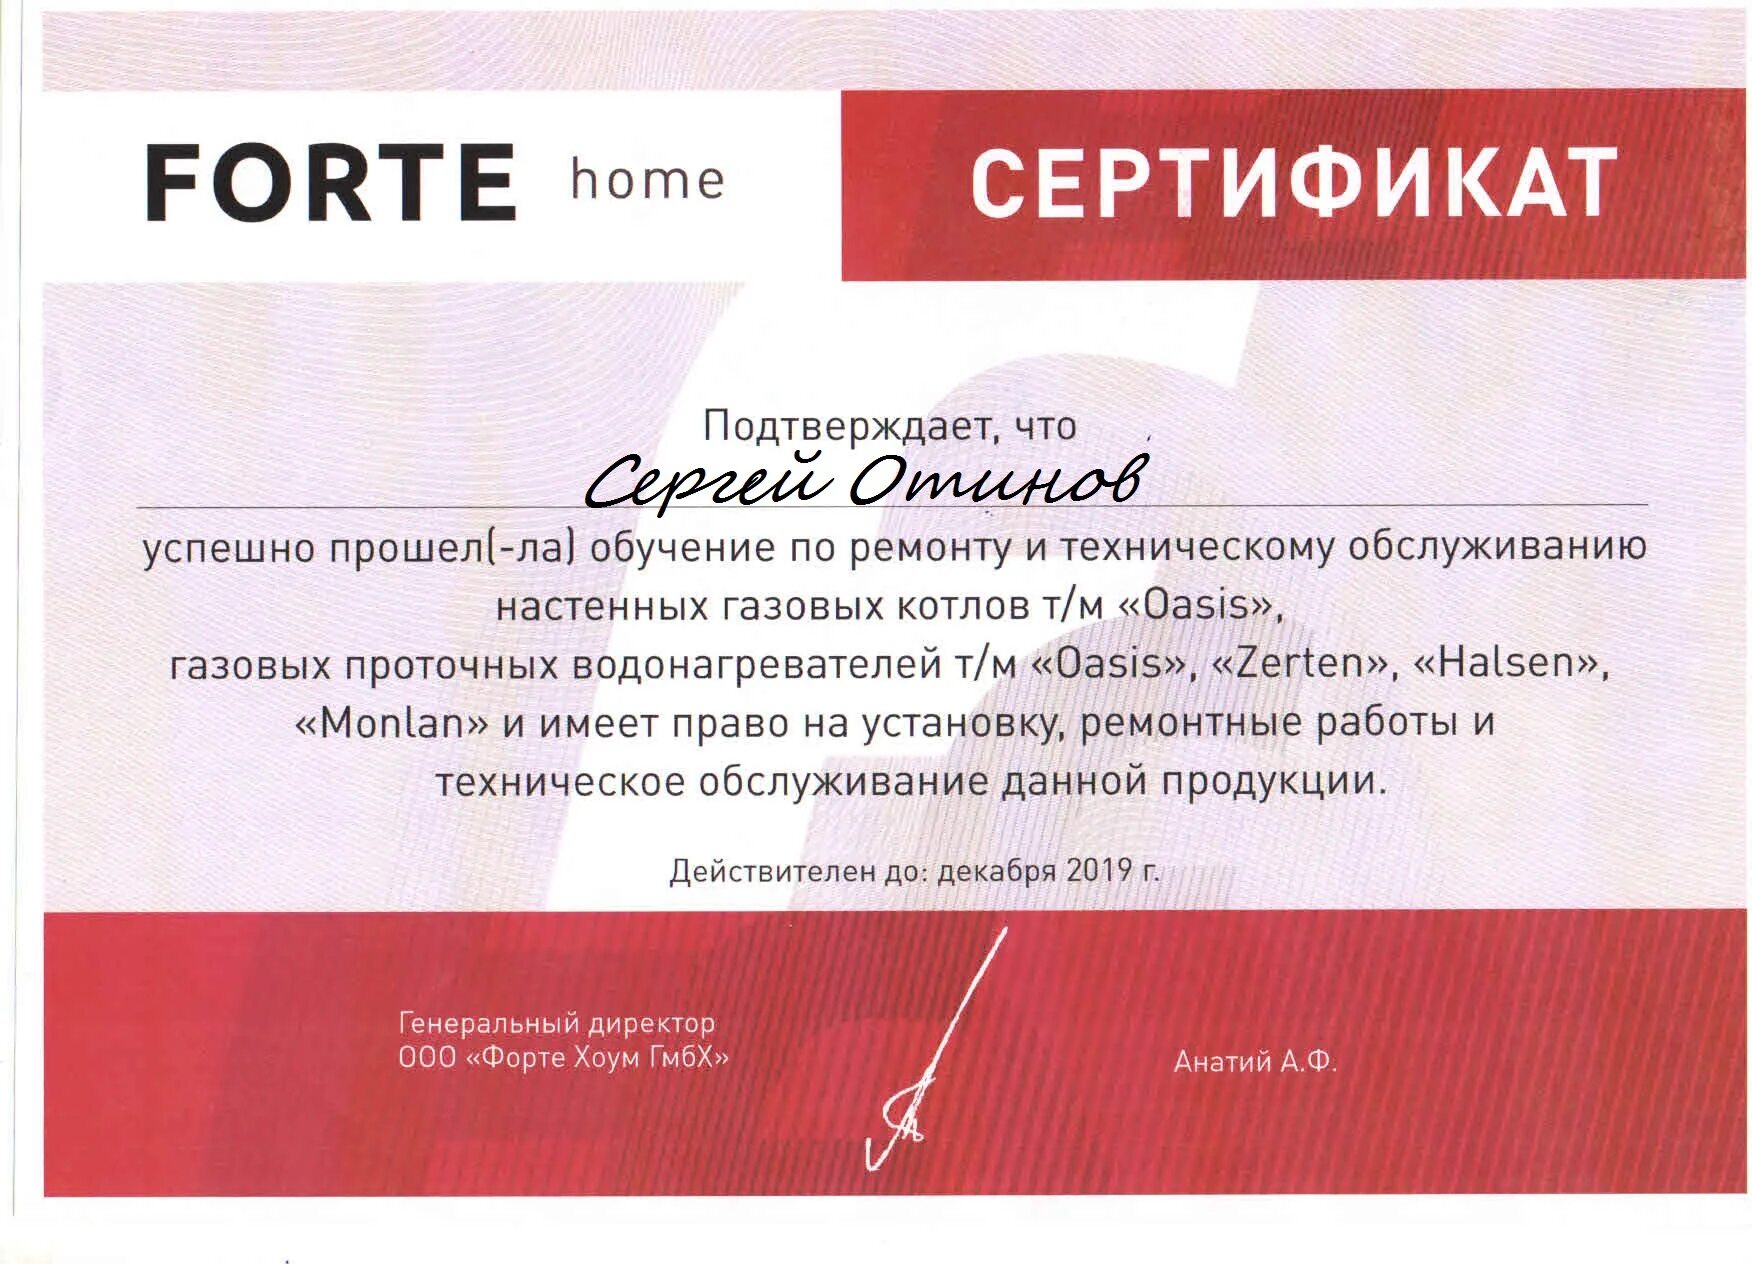 Сертификат на обслуживание газовых котлов. Forte Home GMBH. Форте ГМБХ. Хоум сертификат. Форте хоум гмбх